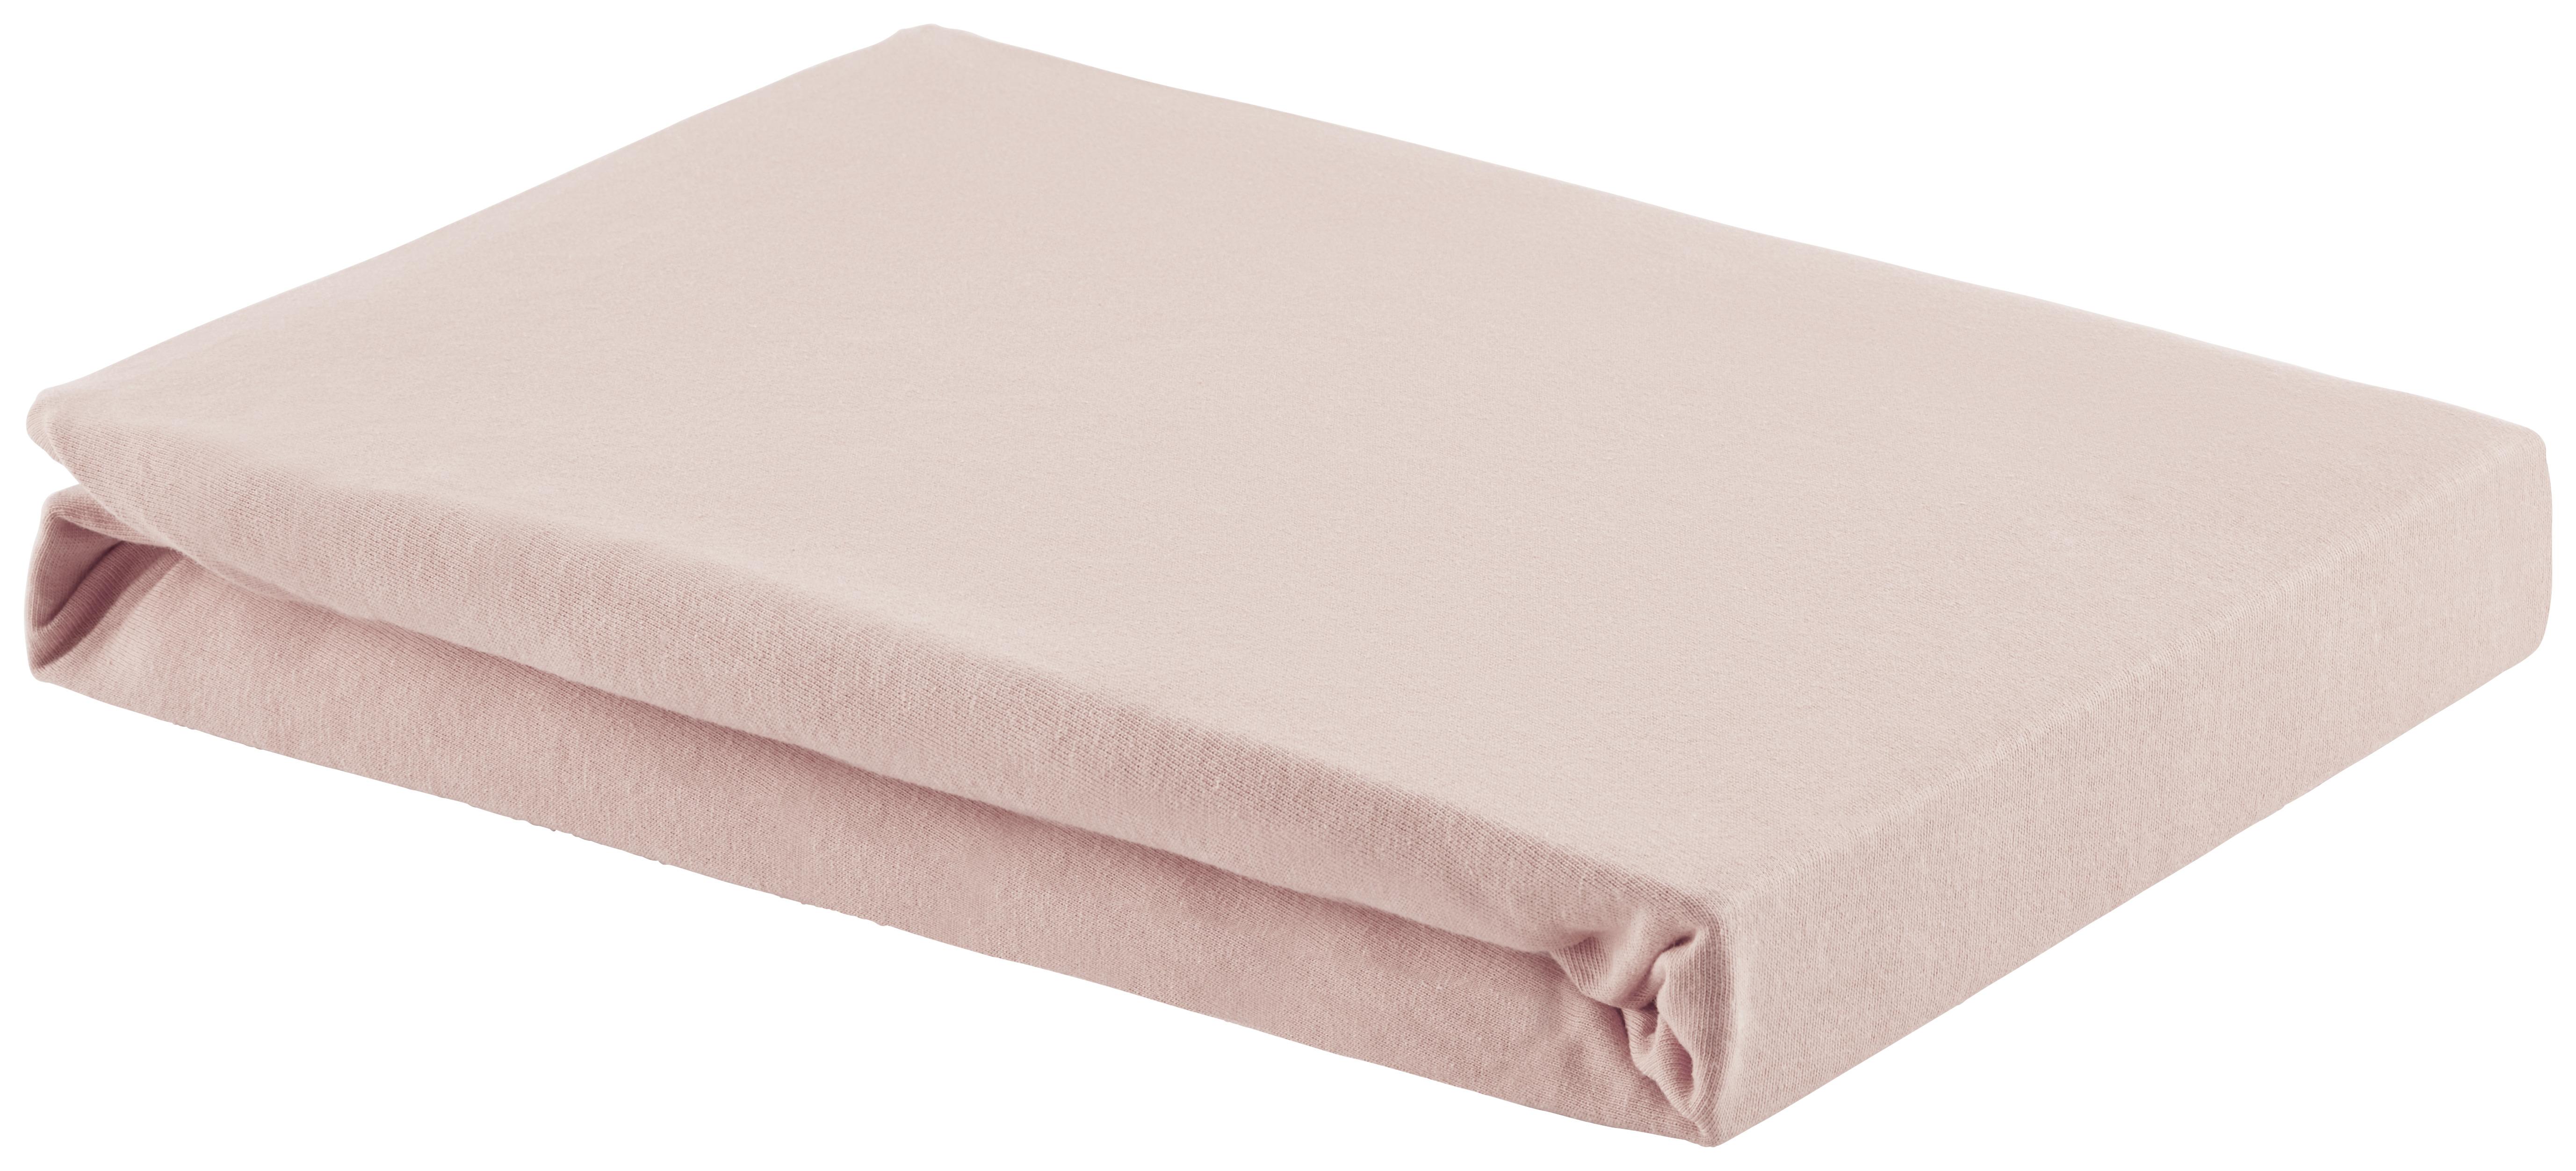 Spannleintuch Basic in Rosa ca. 180x200cm - Rosa, Textil (180/200cm) - Modern Living